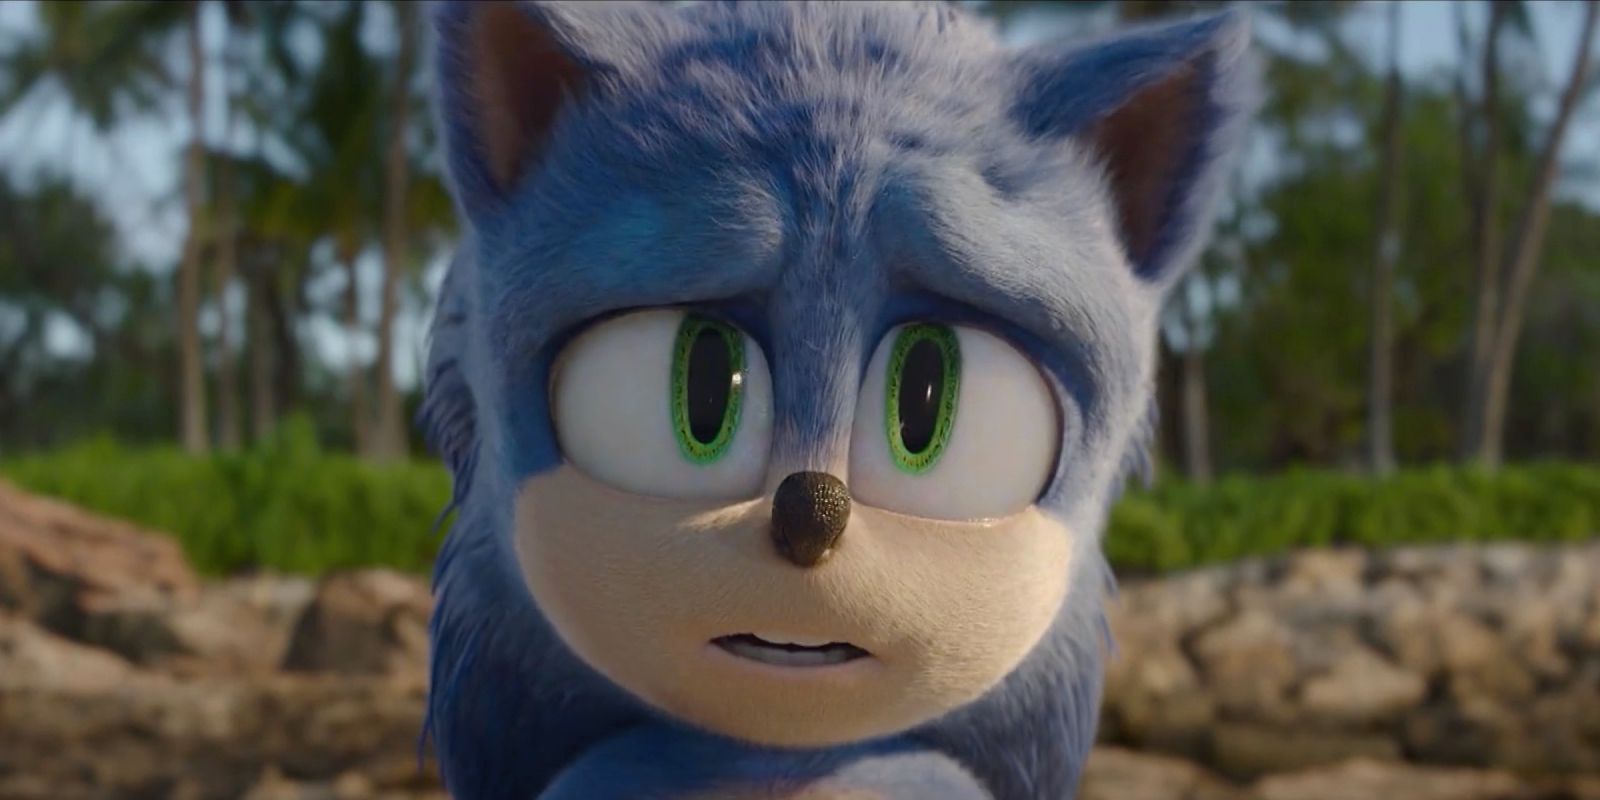 Ben Schwartz as Sonic looking worried in Sonic the Hedgehog 2